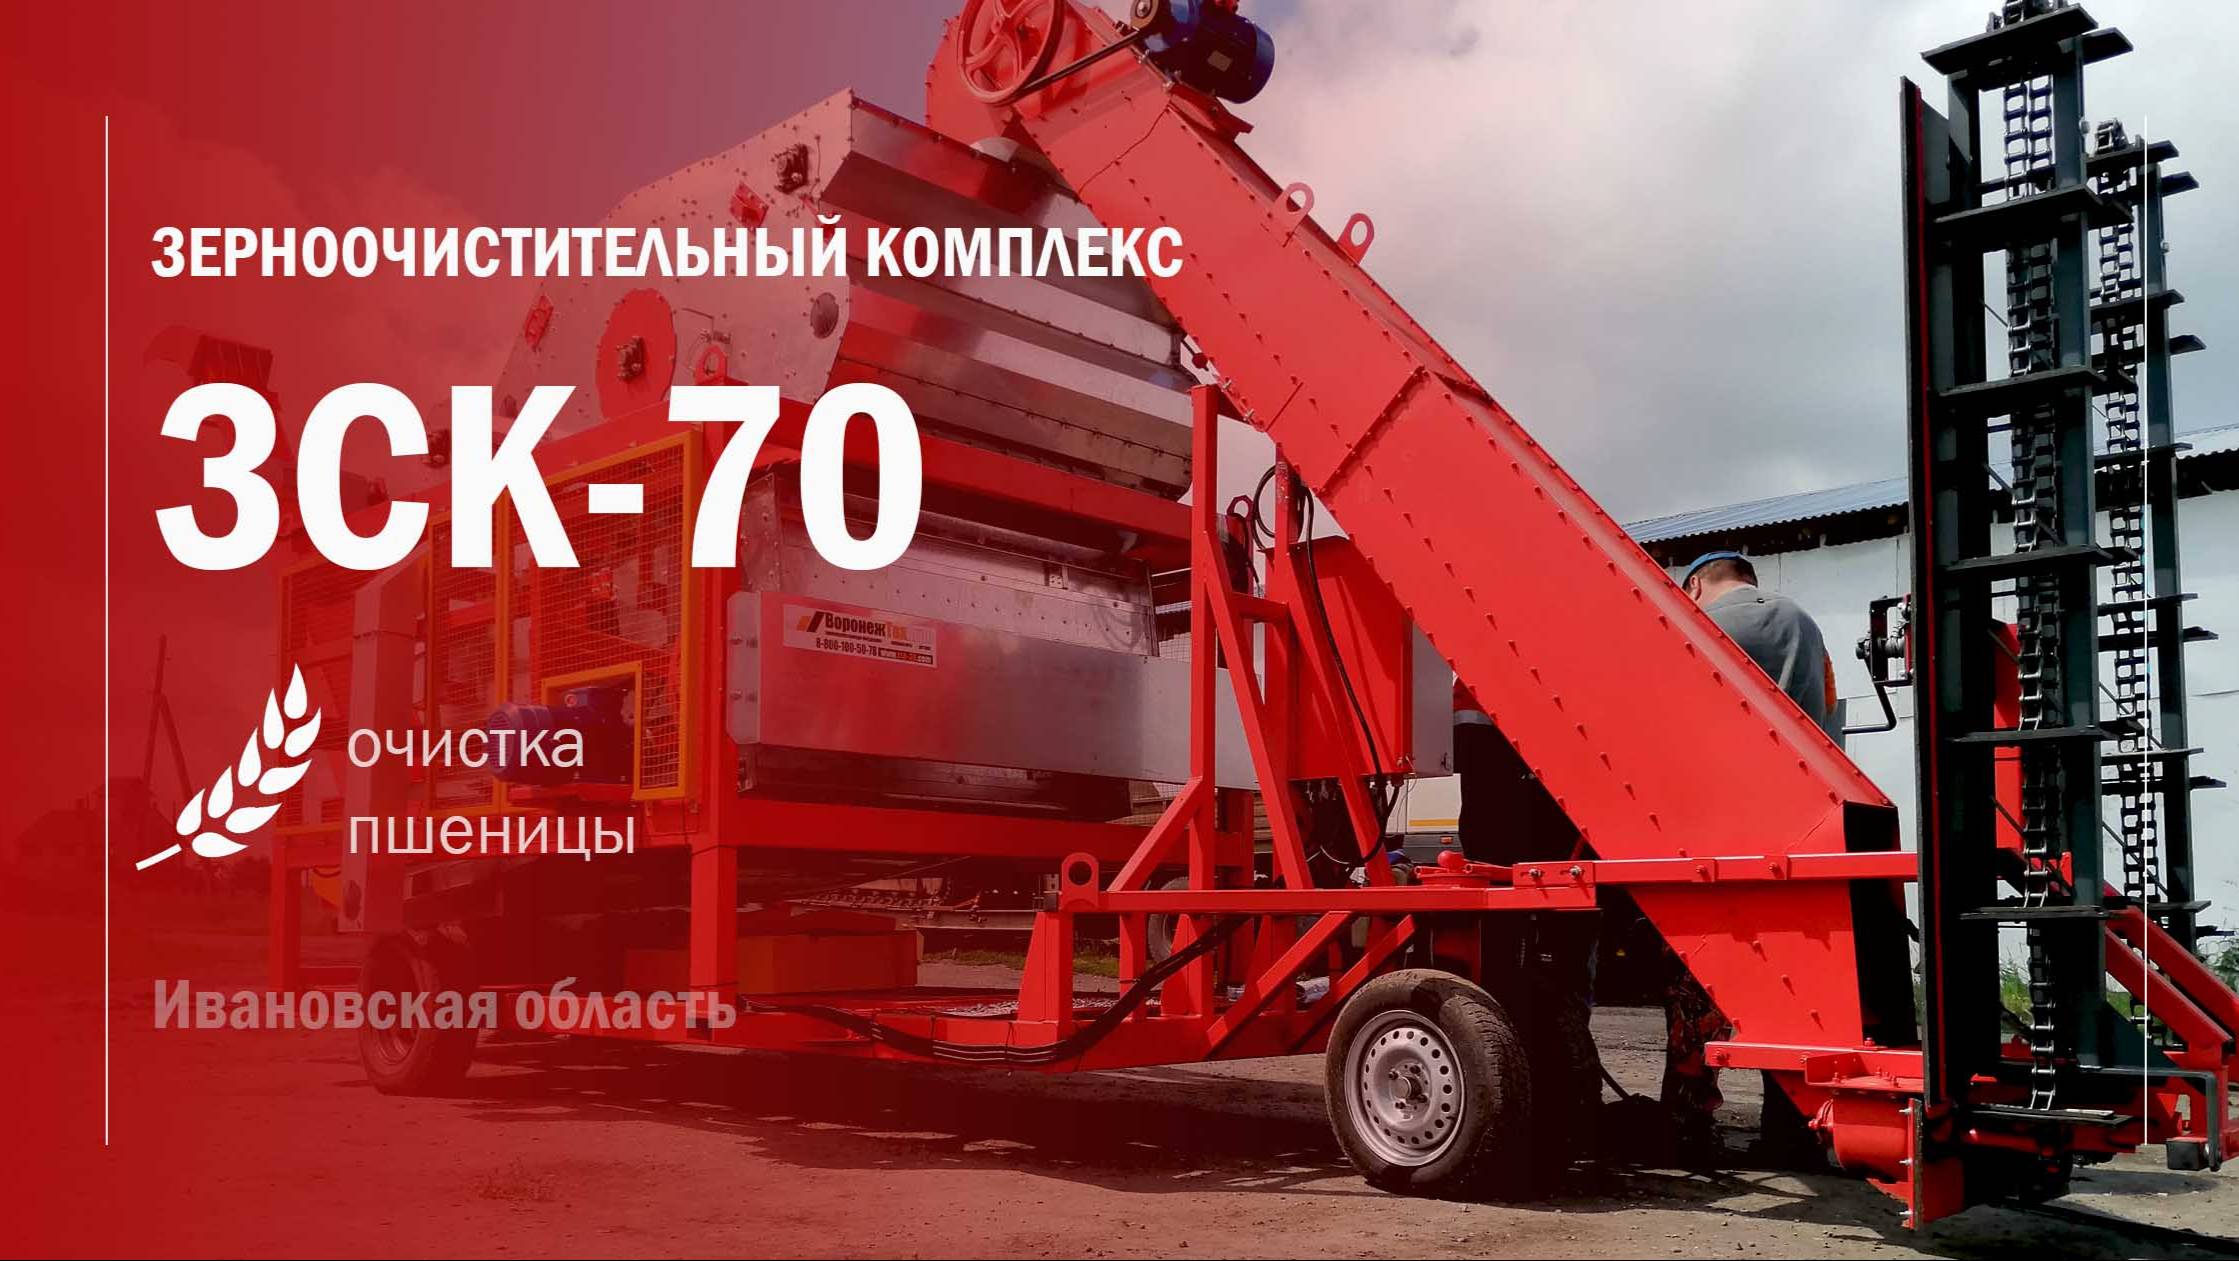 Пуско - наладочные работы мобильного зерноочистительного комплекса ЗСК-70 в Ивановской области